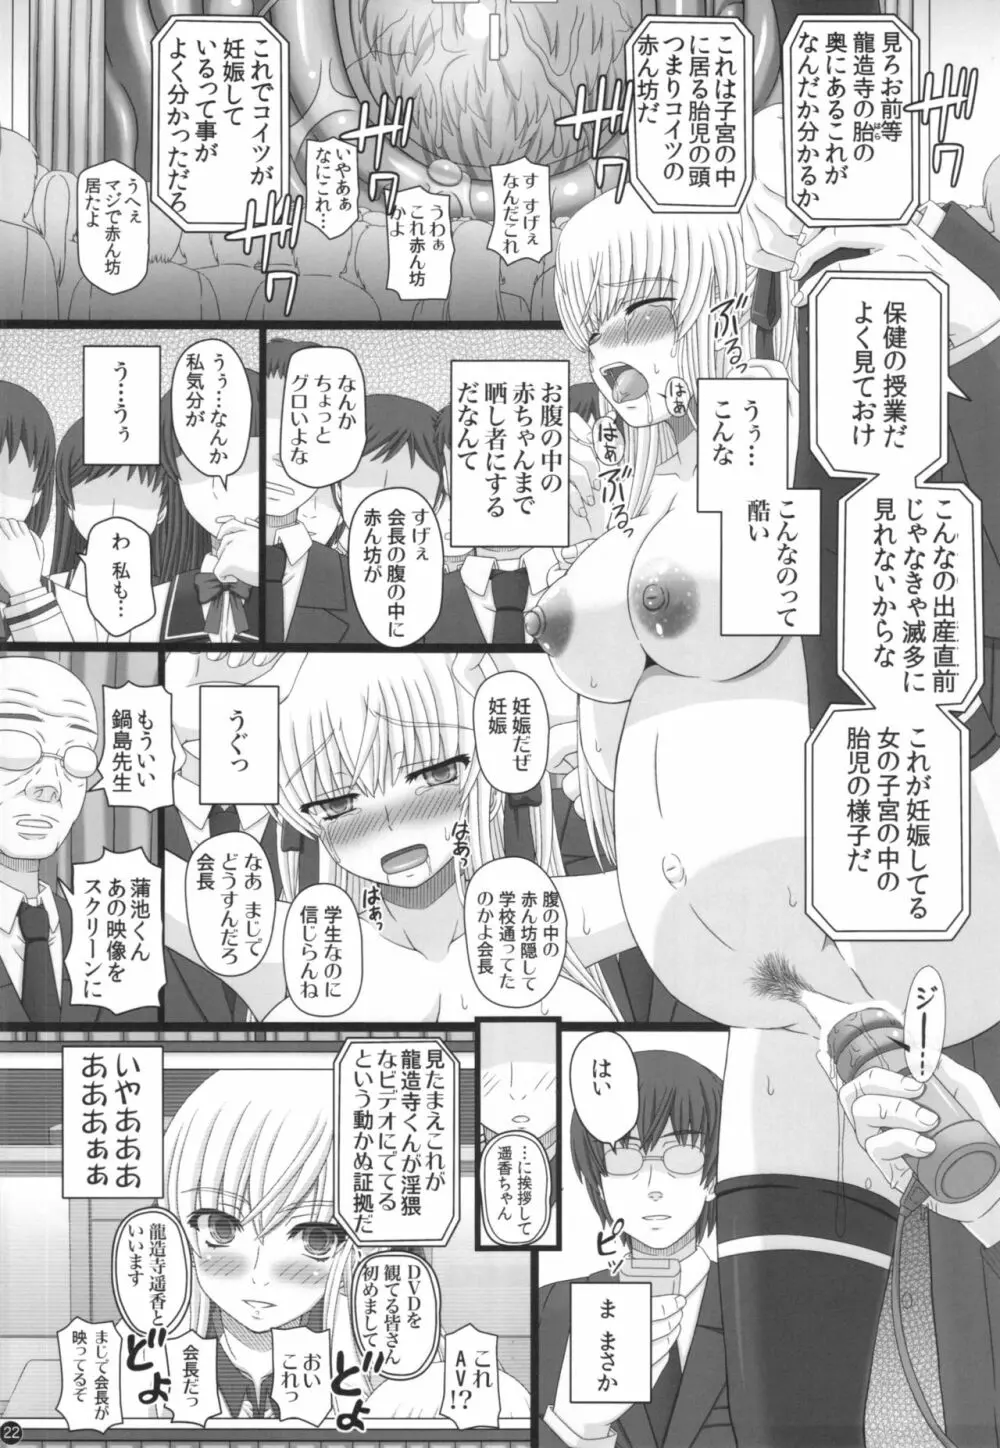 Katashibu 40-shuu 22ページ